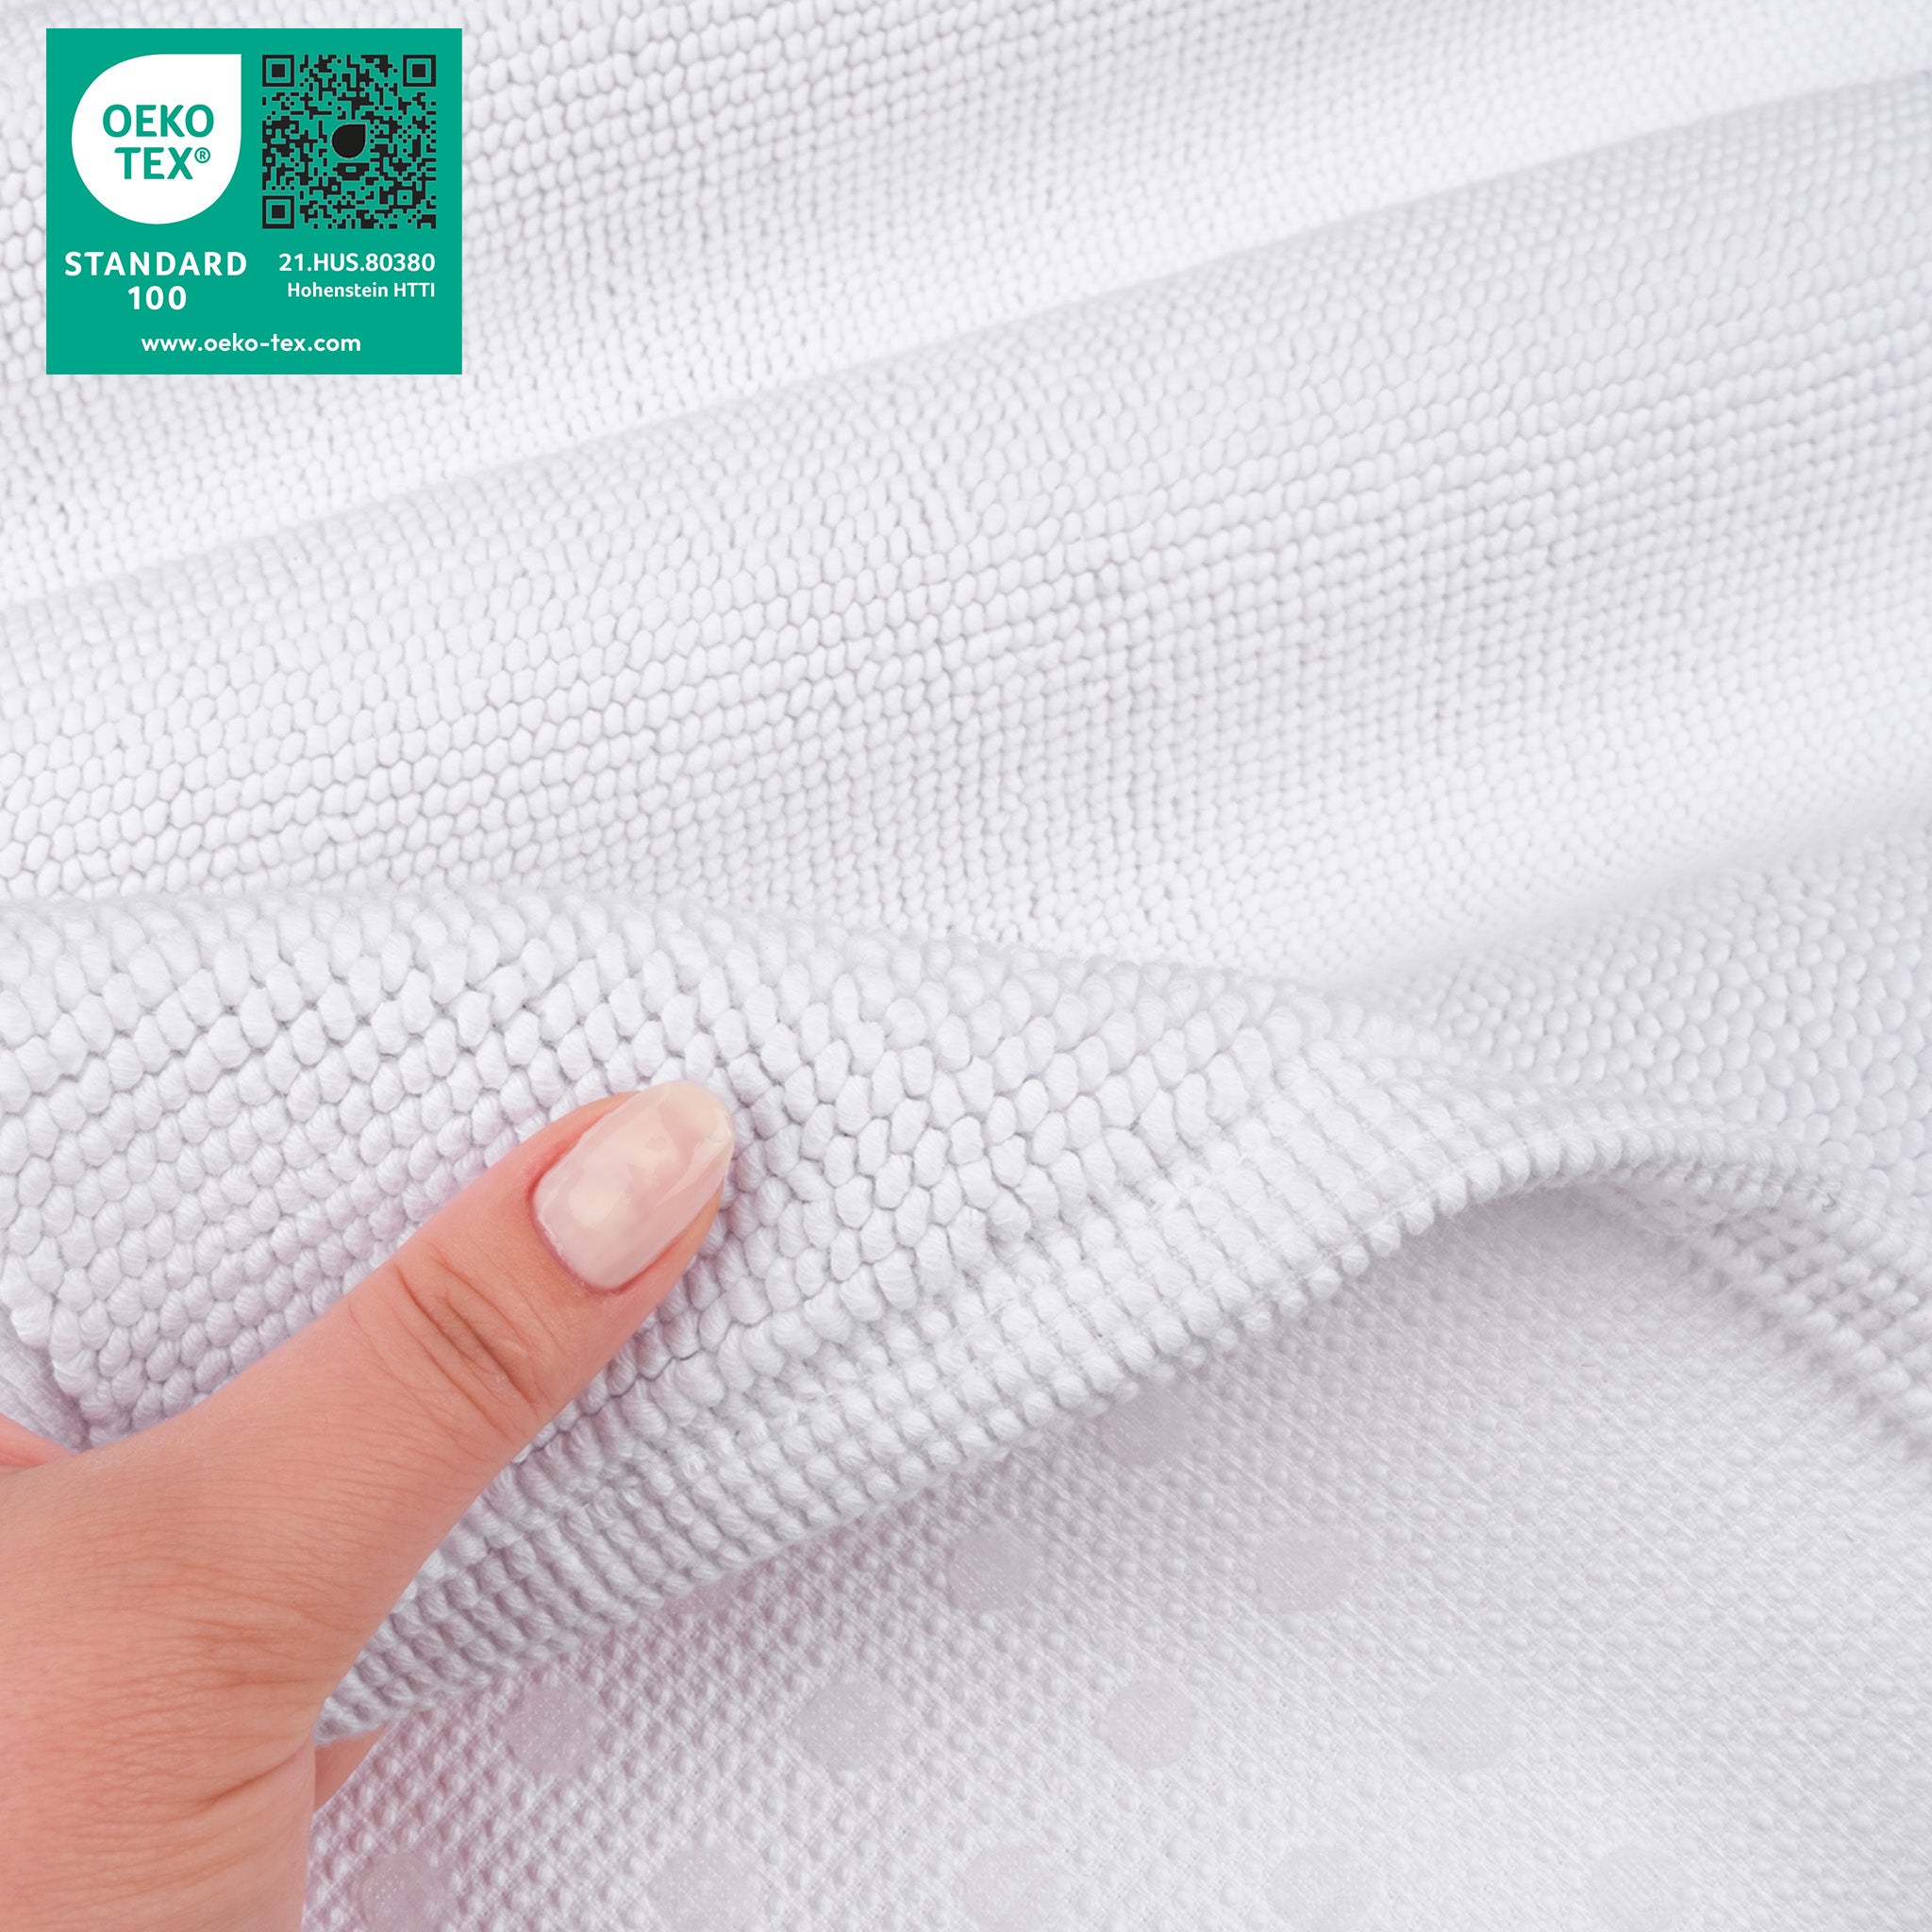 American Soft Linen 100% Cotton Non-Slip 17x24 Inch Bath Rug Wholesale white-5